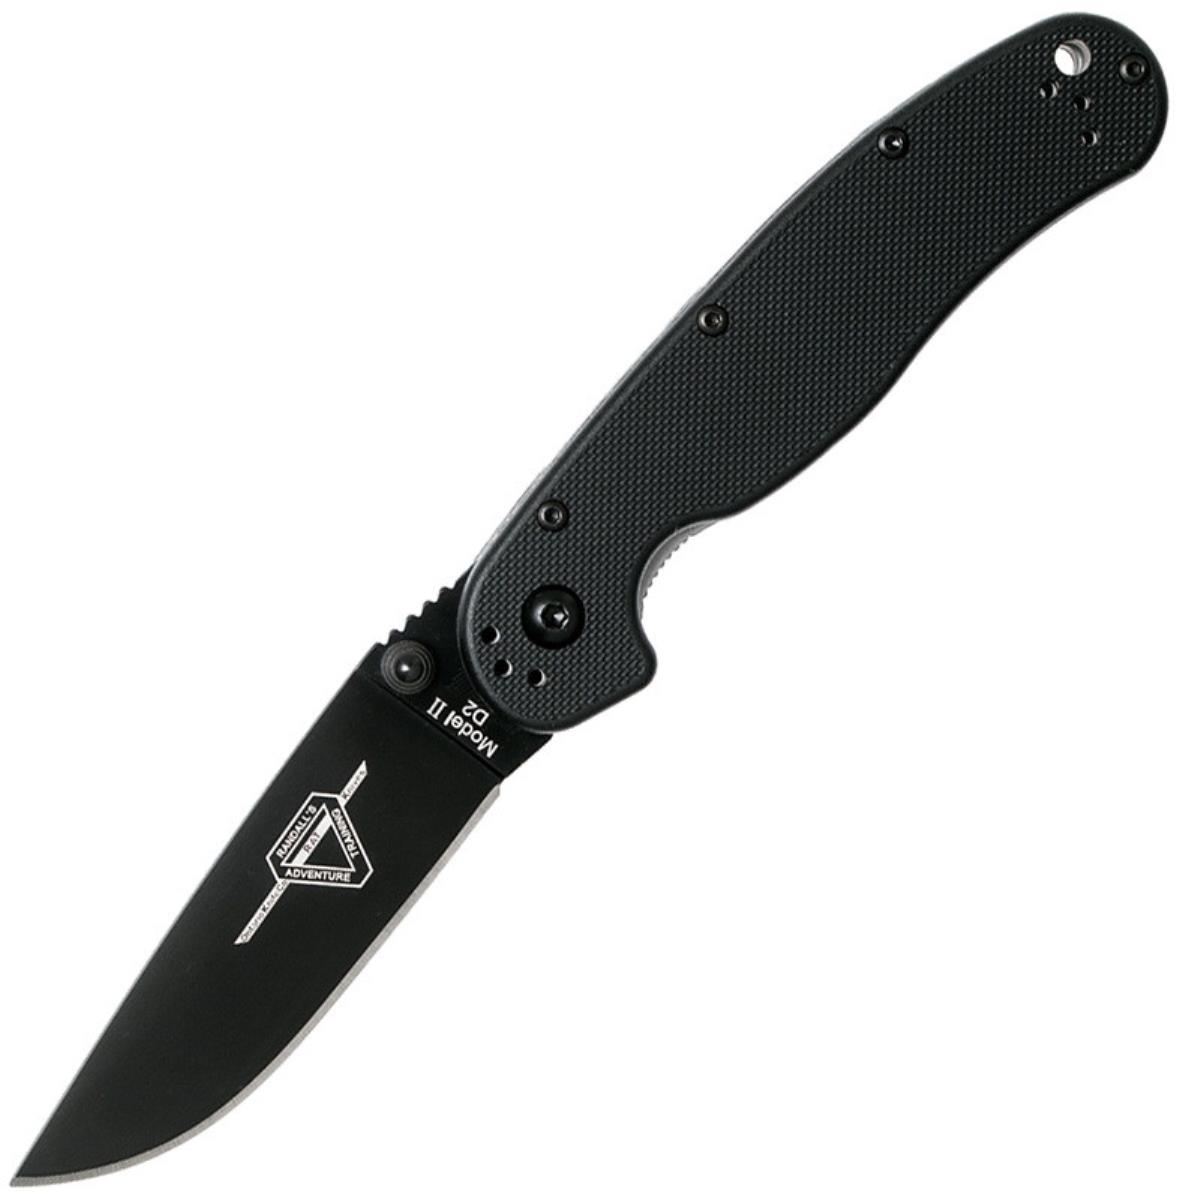 Нож RAT II складн.,чёрная нейлоновая рукоять, клинок AUS8 чёрное покрытие (8861)  ONTARIO нож shikra складн коричневая рукоять микарта титан клинок aus8 чёрн покрытие pvd 8599 ontario